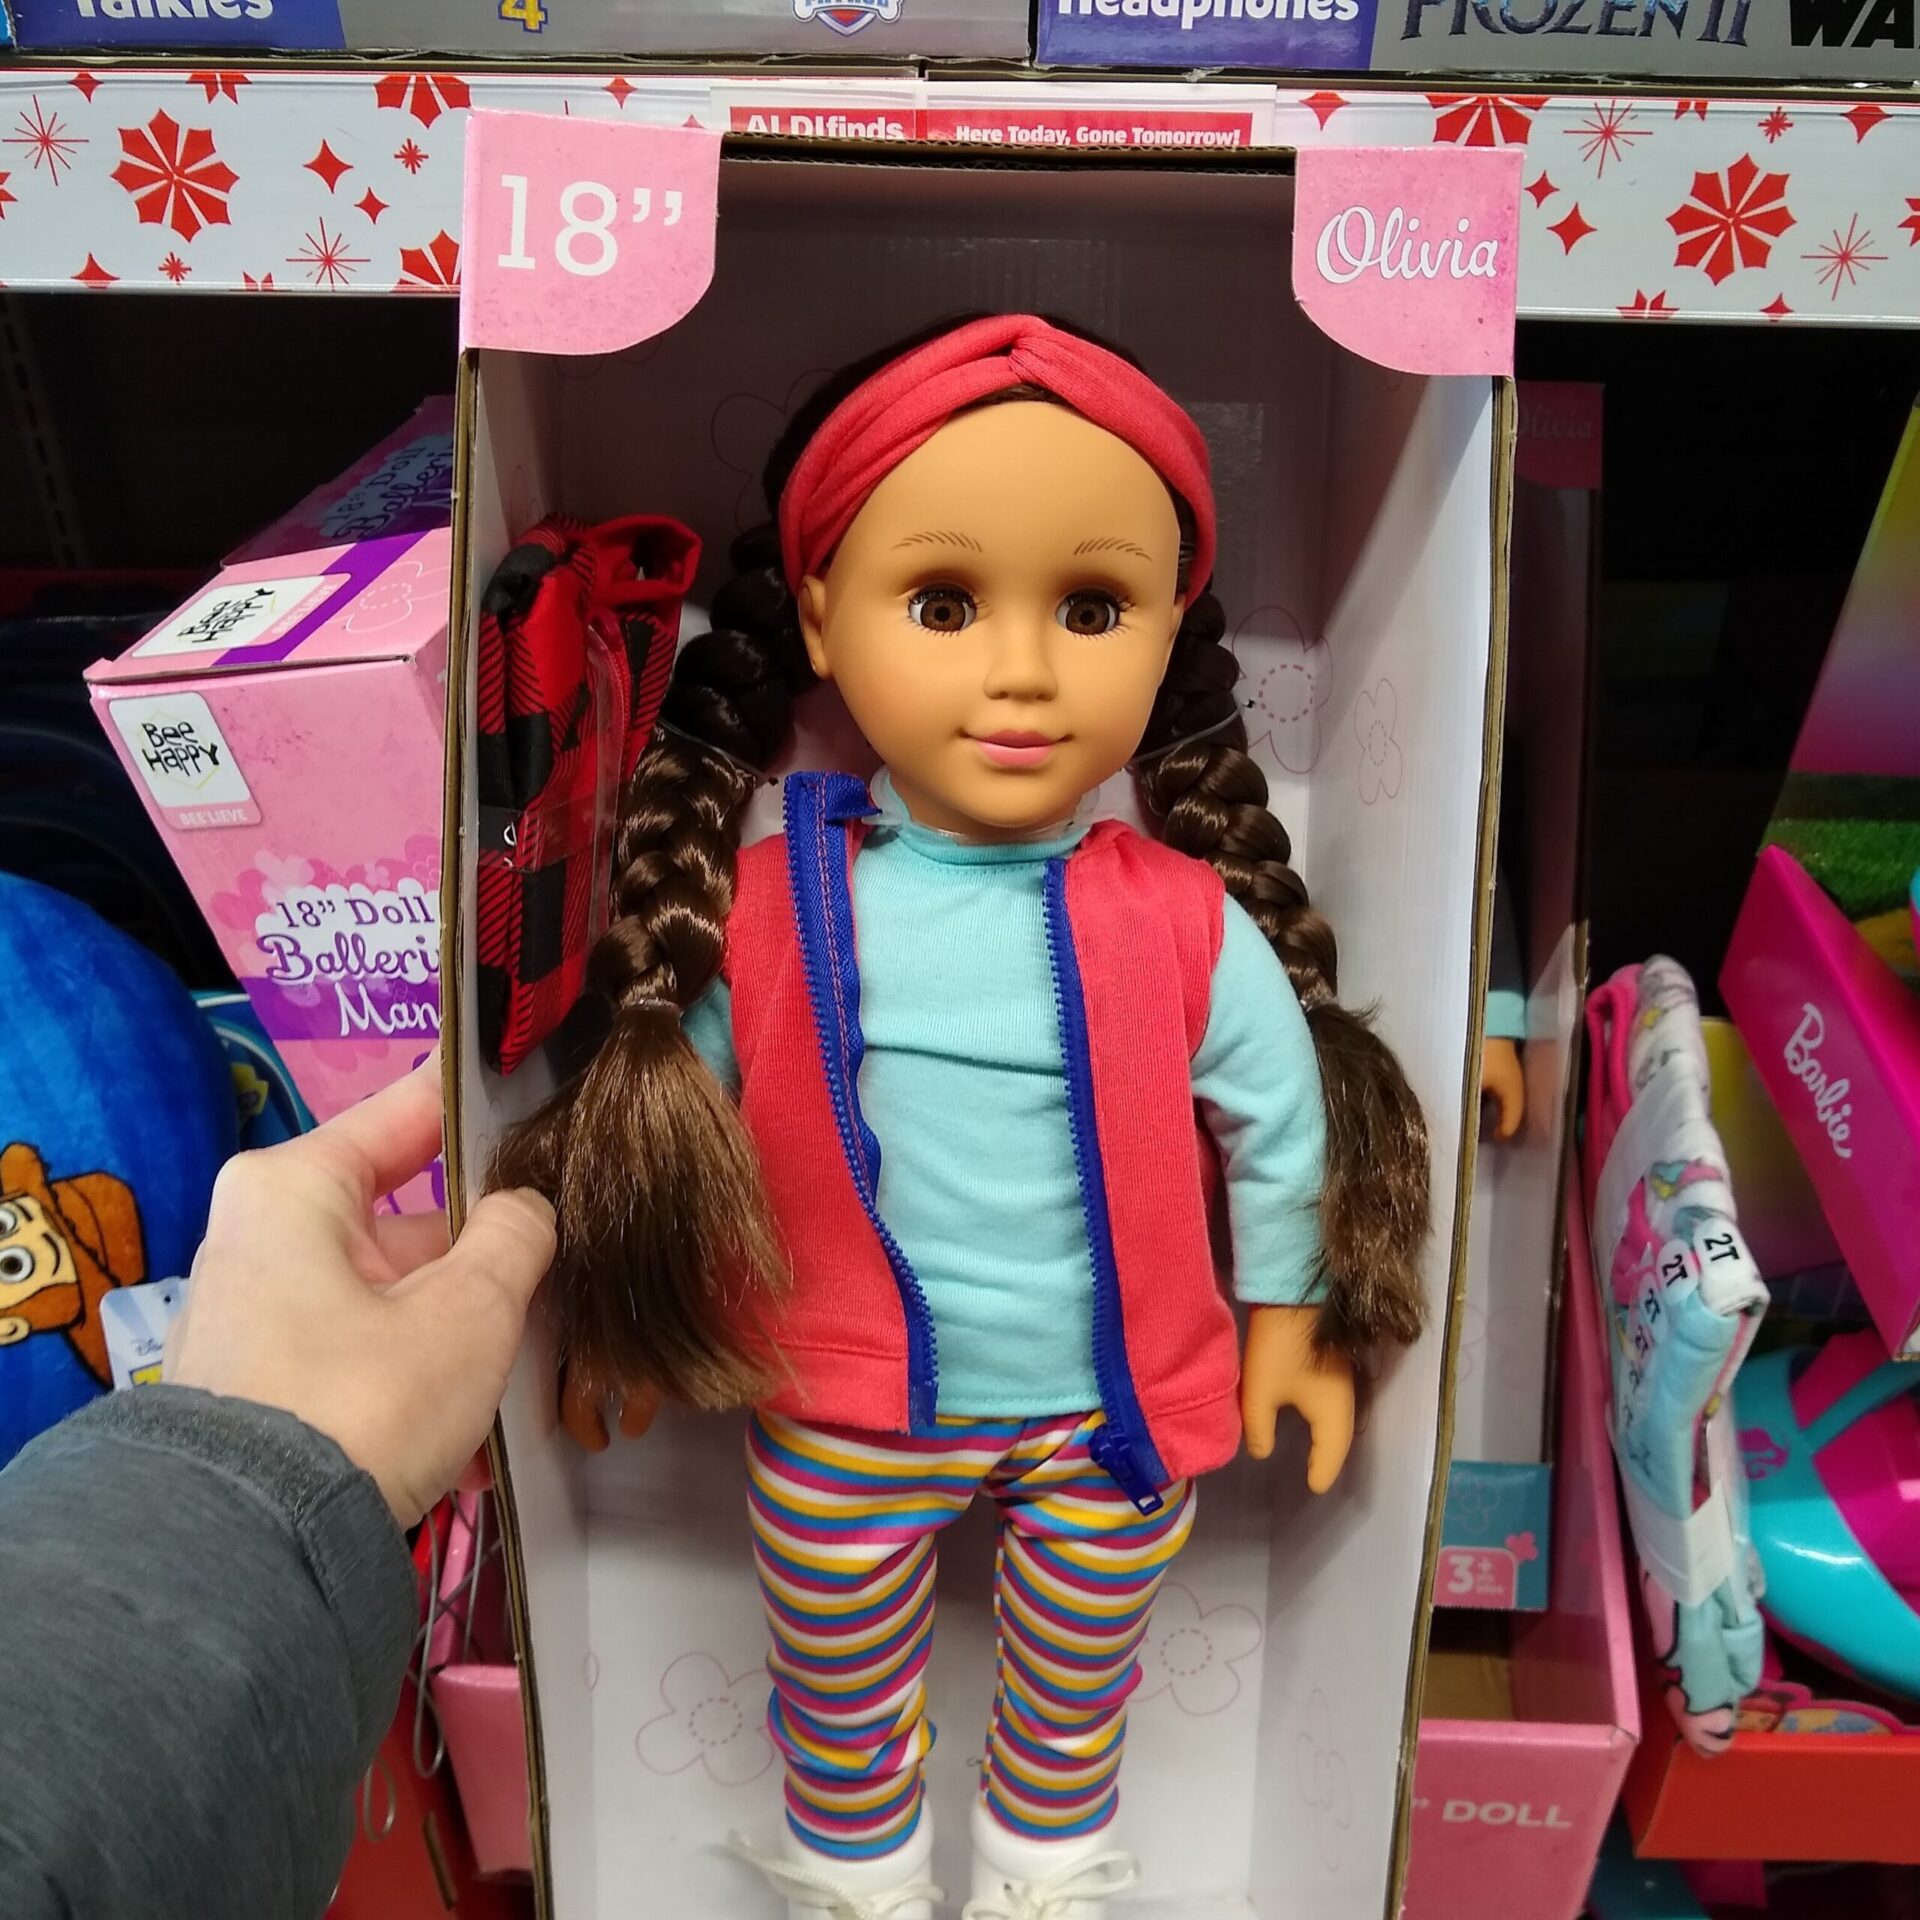 18 inch dolls comparison